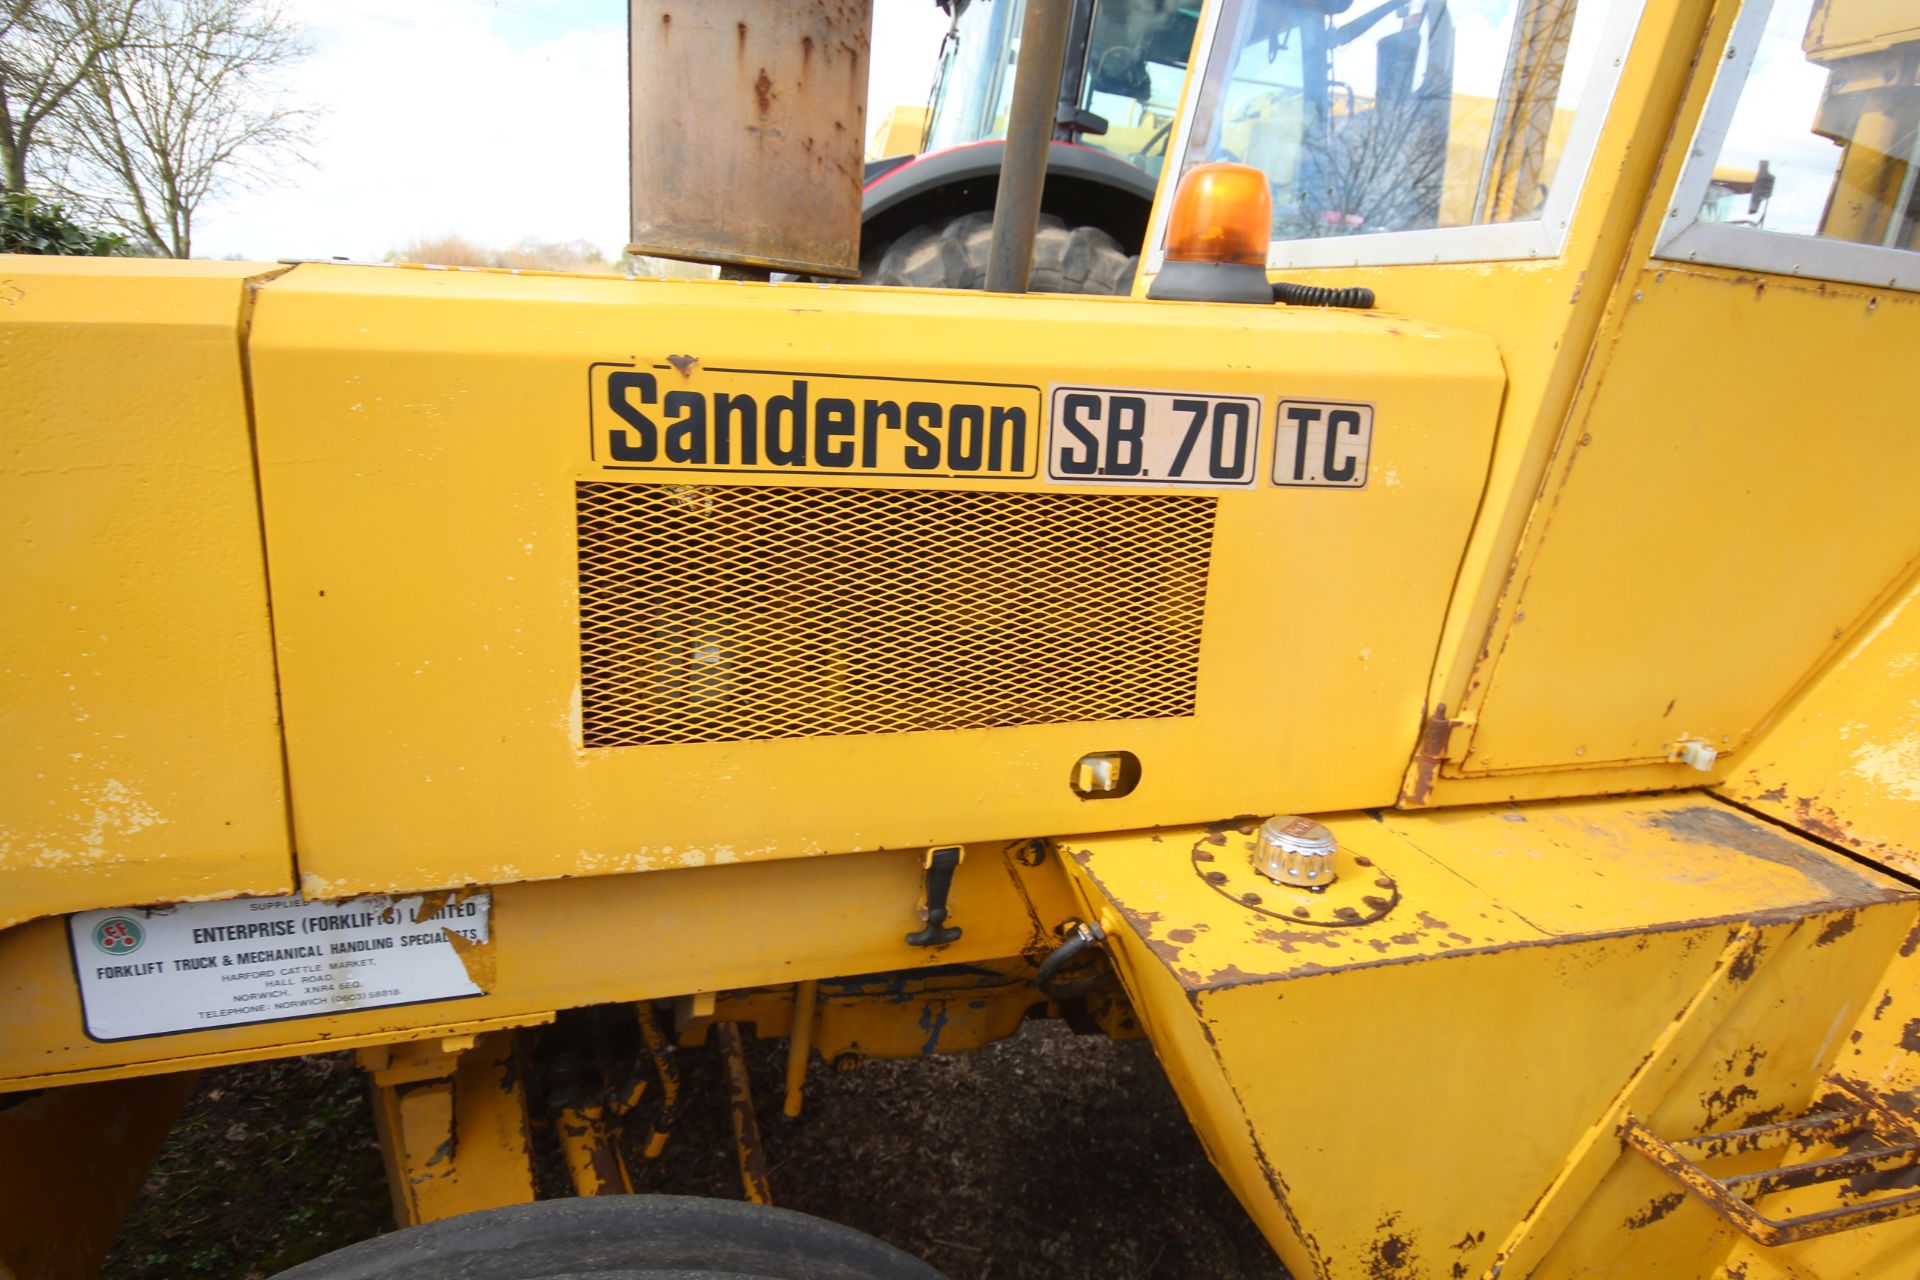 Sanderson SB70 TC 2WD rough terrain forklift. Registration KNG 916V. Date of first registration 03/ - Image 20 of 57